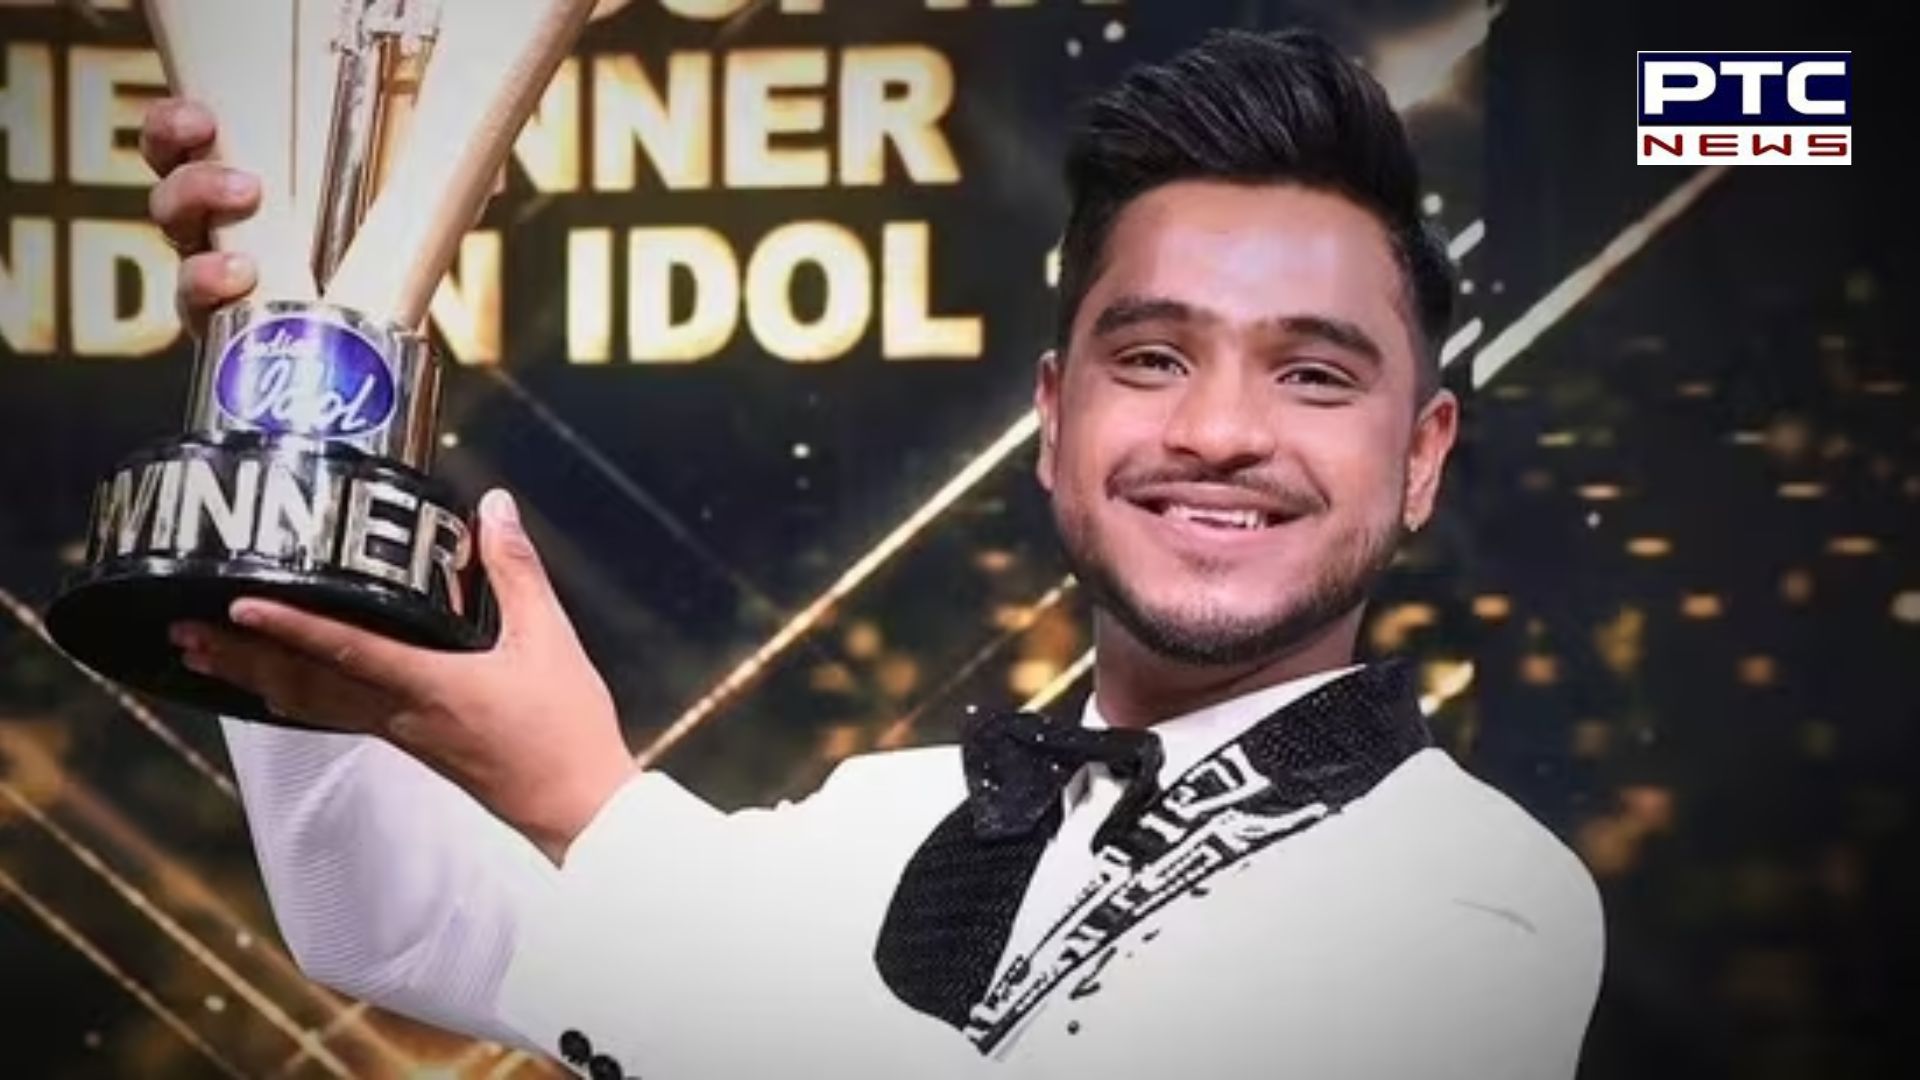 Indian Idol 14: ਕਾਨਪੁਰ ਦੇ ਵੈਭਵ ਗੁਪਤਾ ਨੇ ਜਿੱਤਿਆ ਖਿਤਾਬ, ਜਾਣੋ ਹੋਰ ਕੀ ਕੁੱਝ ਮਿਲਿਆ